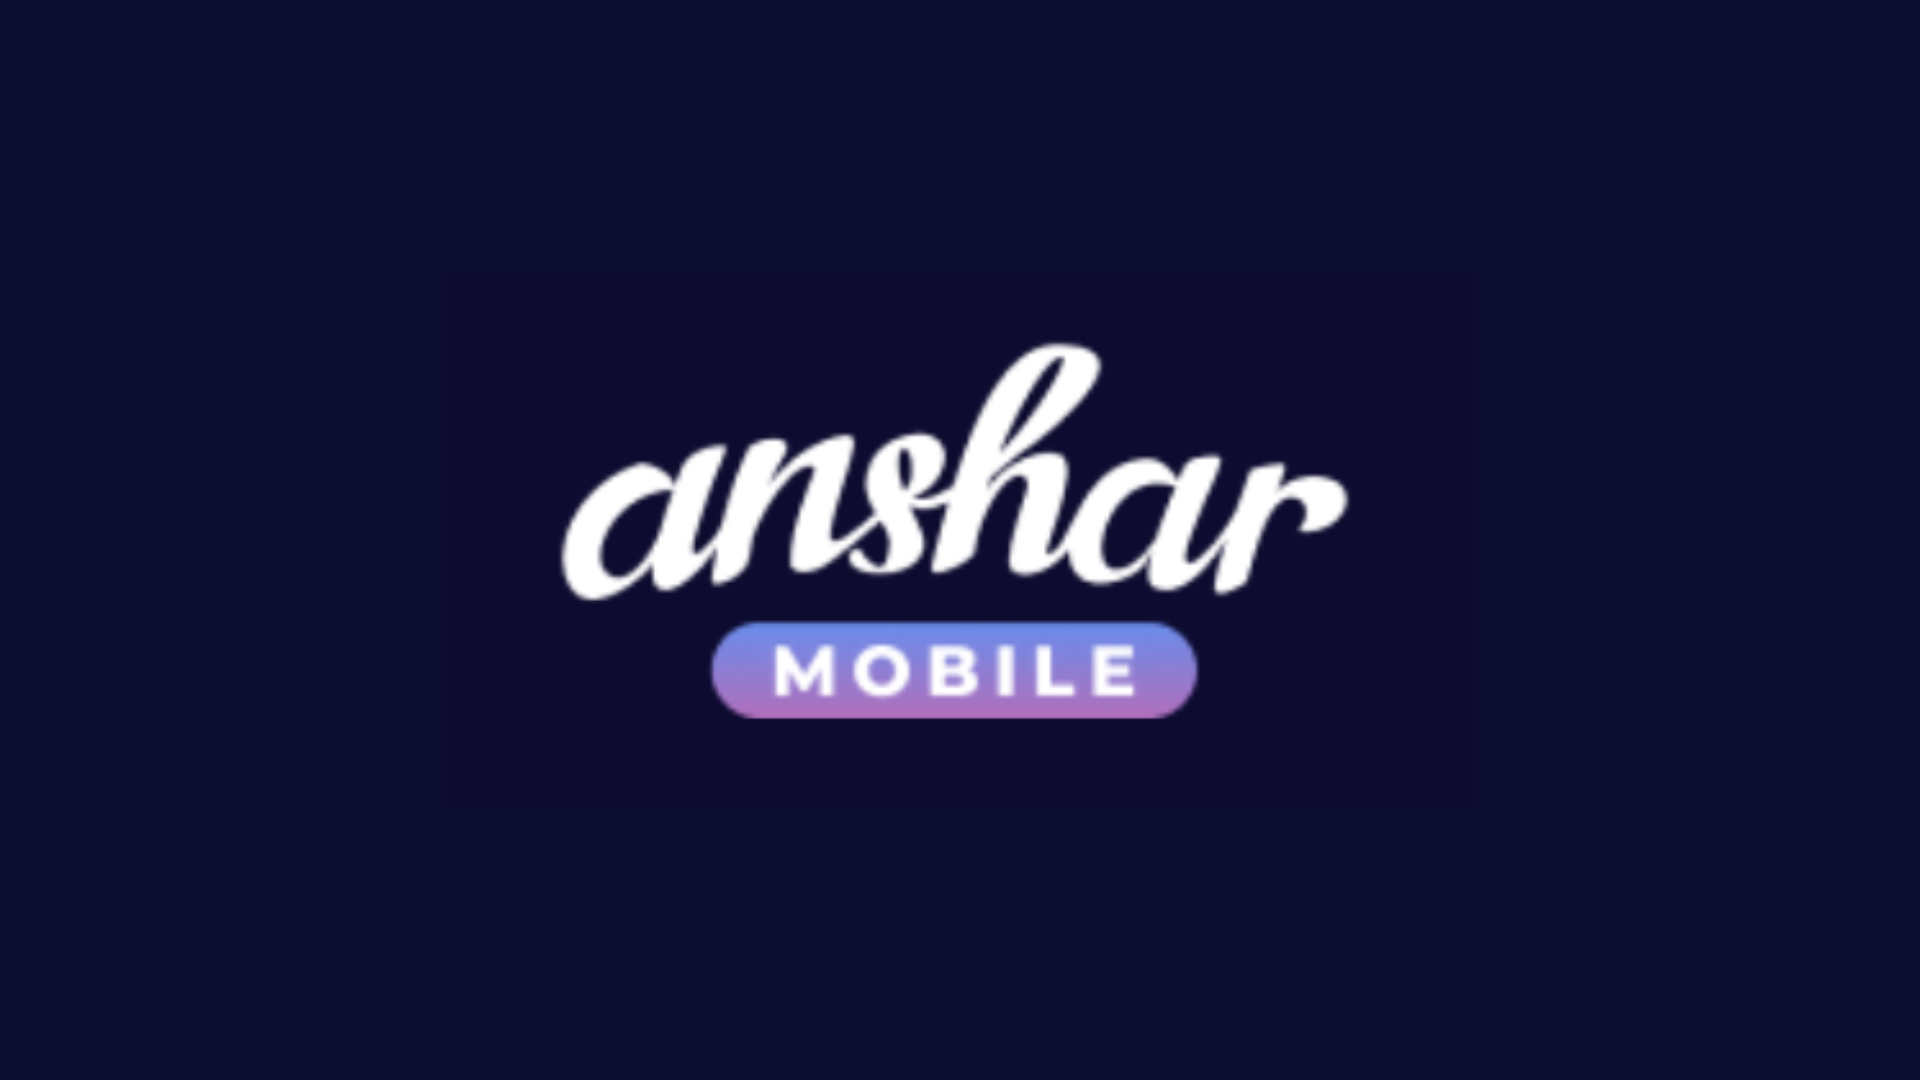 Anshar mobile logo